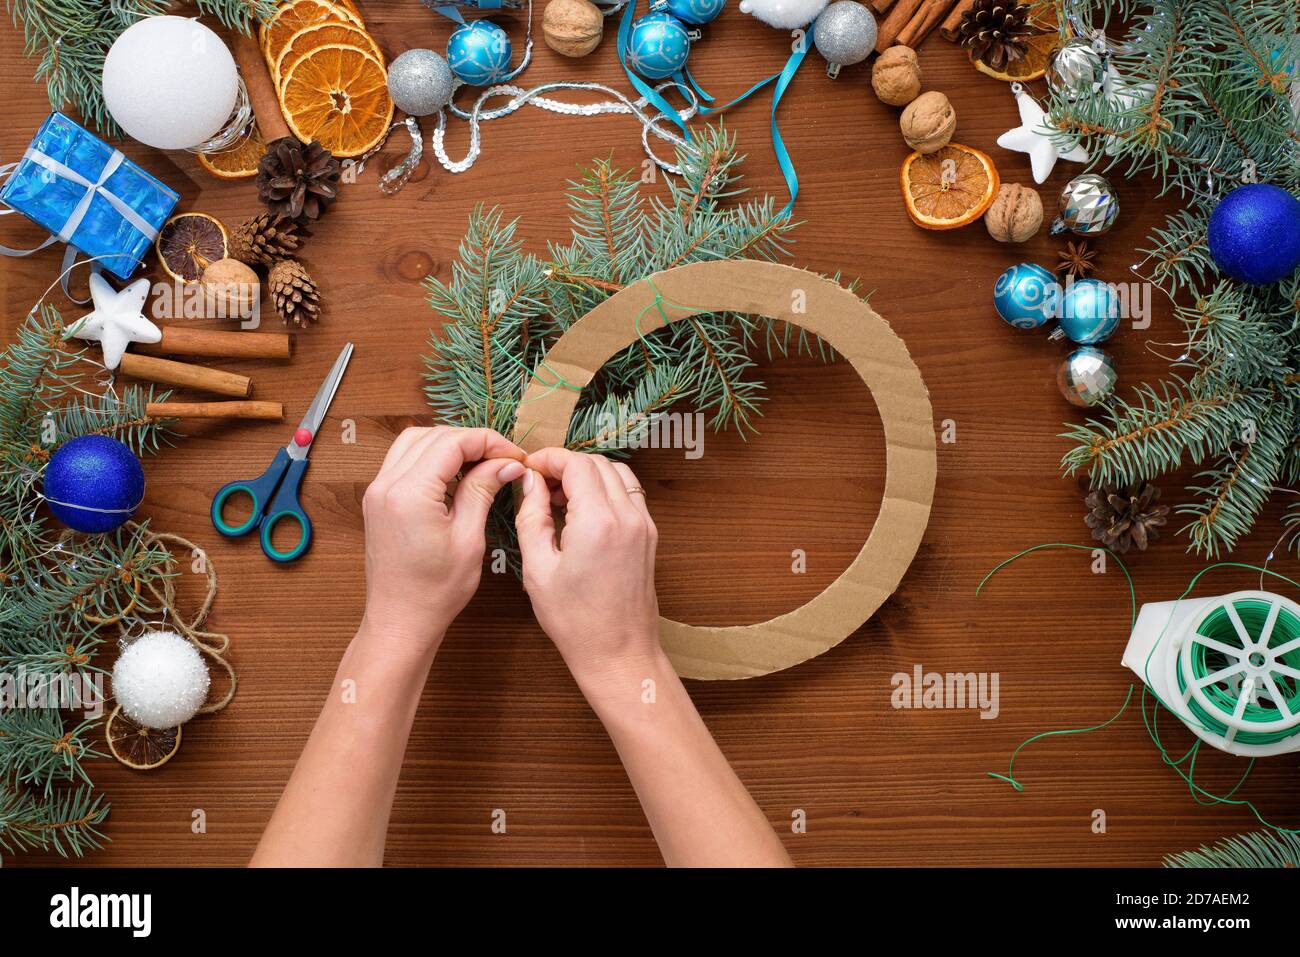 Processus étape par étape de fabrication d'une couronne d'arbre de Noël à la maison à partir de branches d'épinette, d'oranges et de boules de Noël dans les couleurs argent et bleu de la Banque D'Images